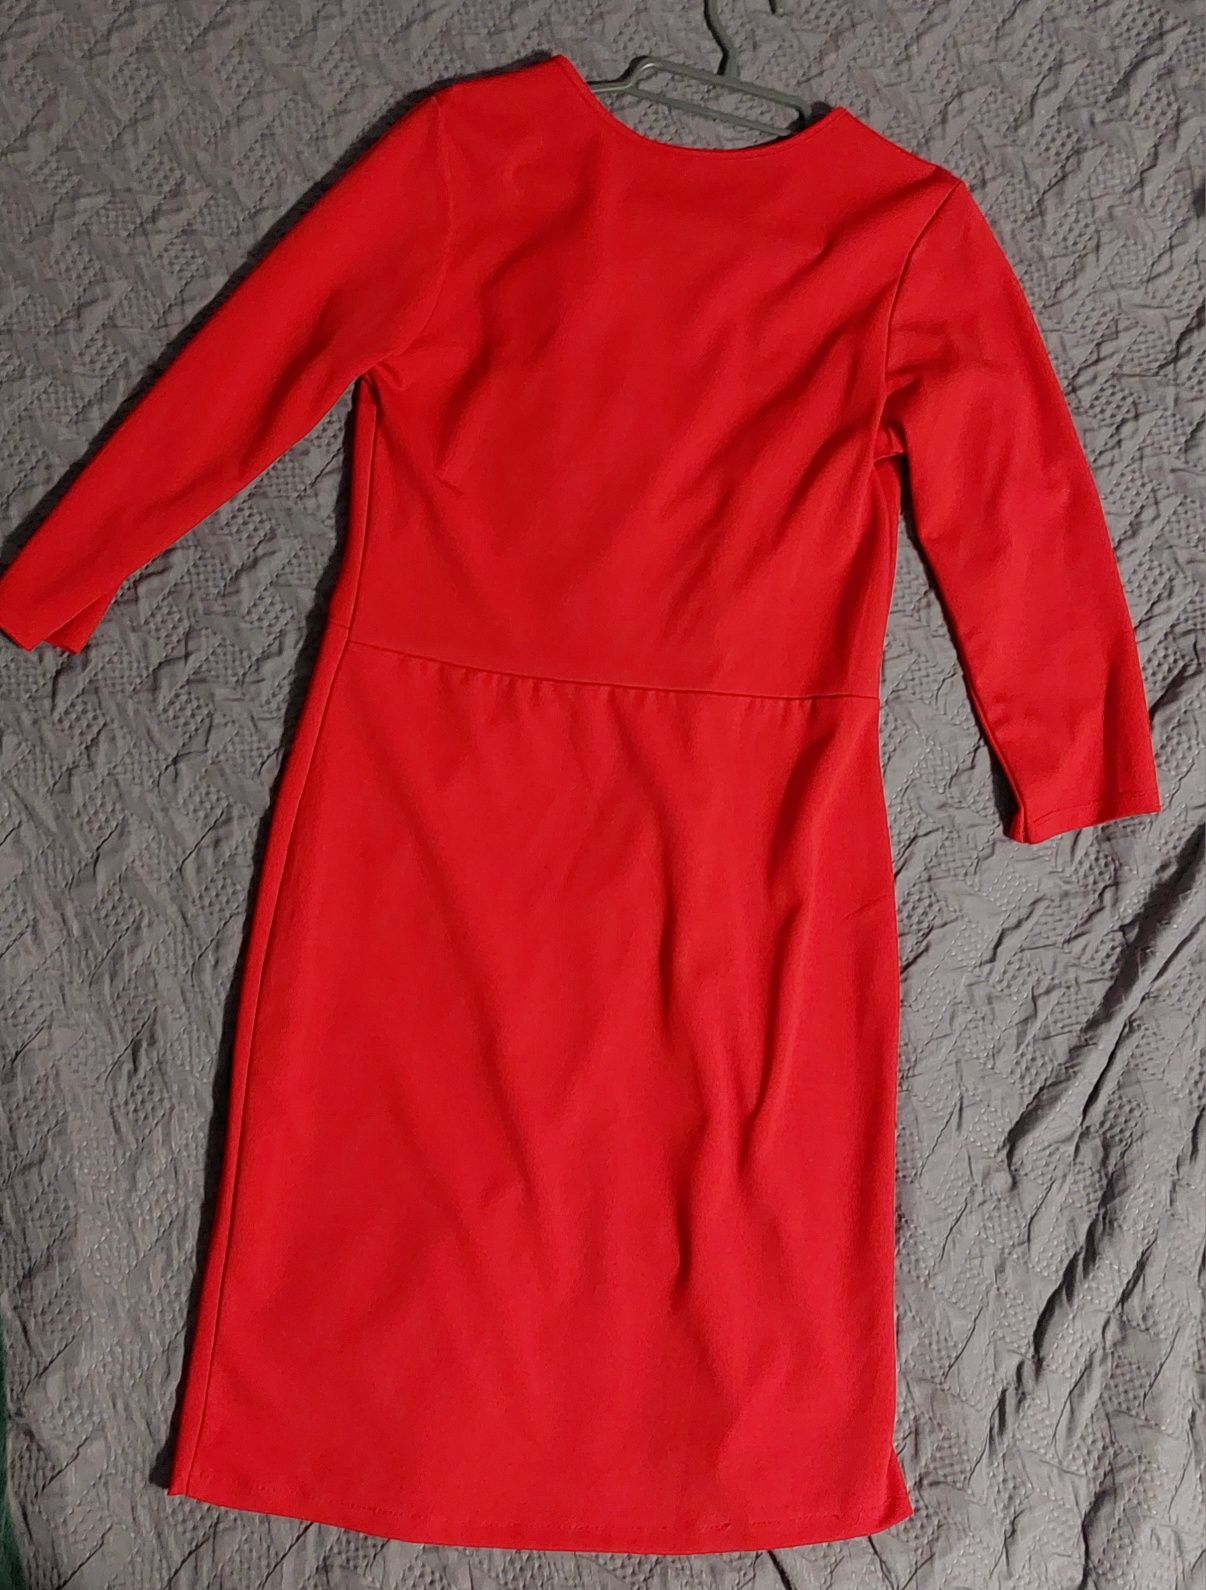 Sukienka czerwona sexy, koktajlowa,na imprezę dekolt r.S,M